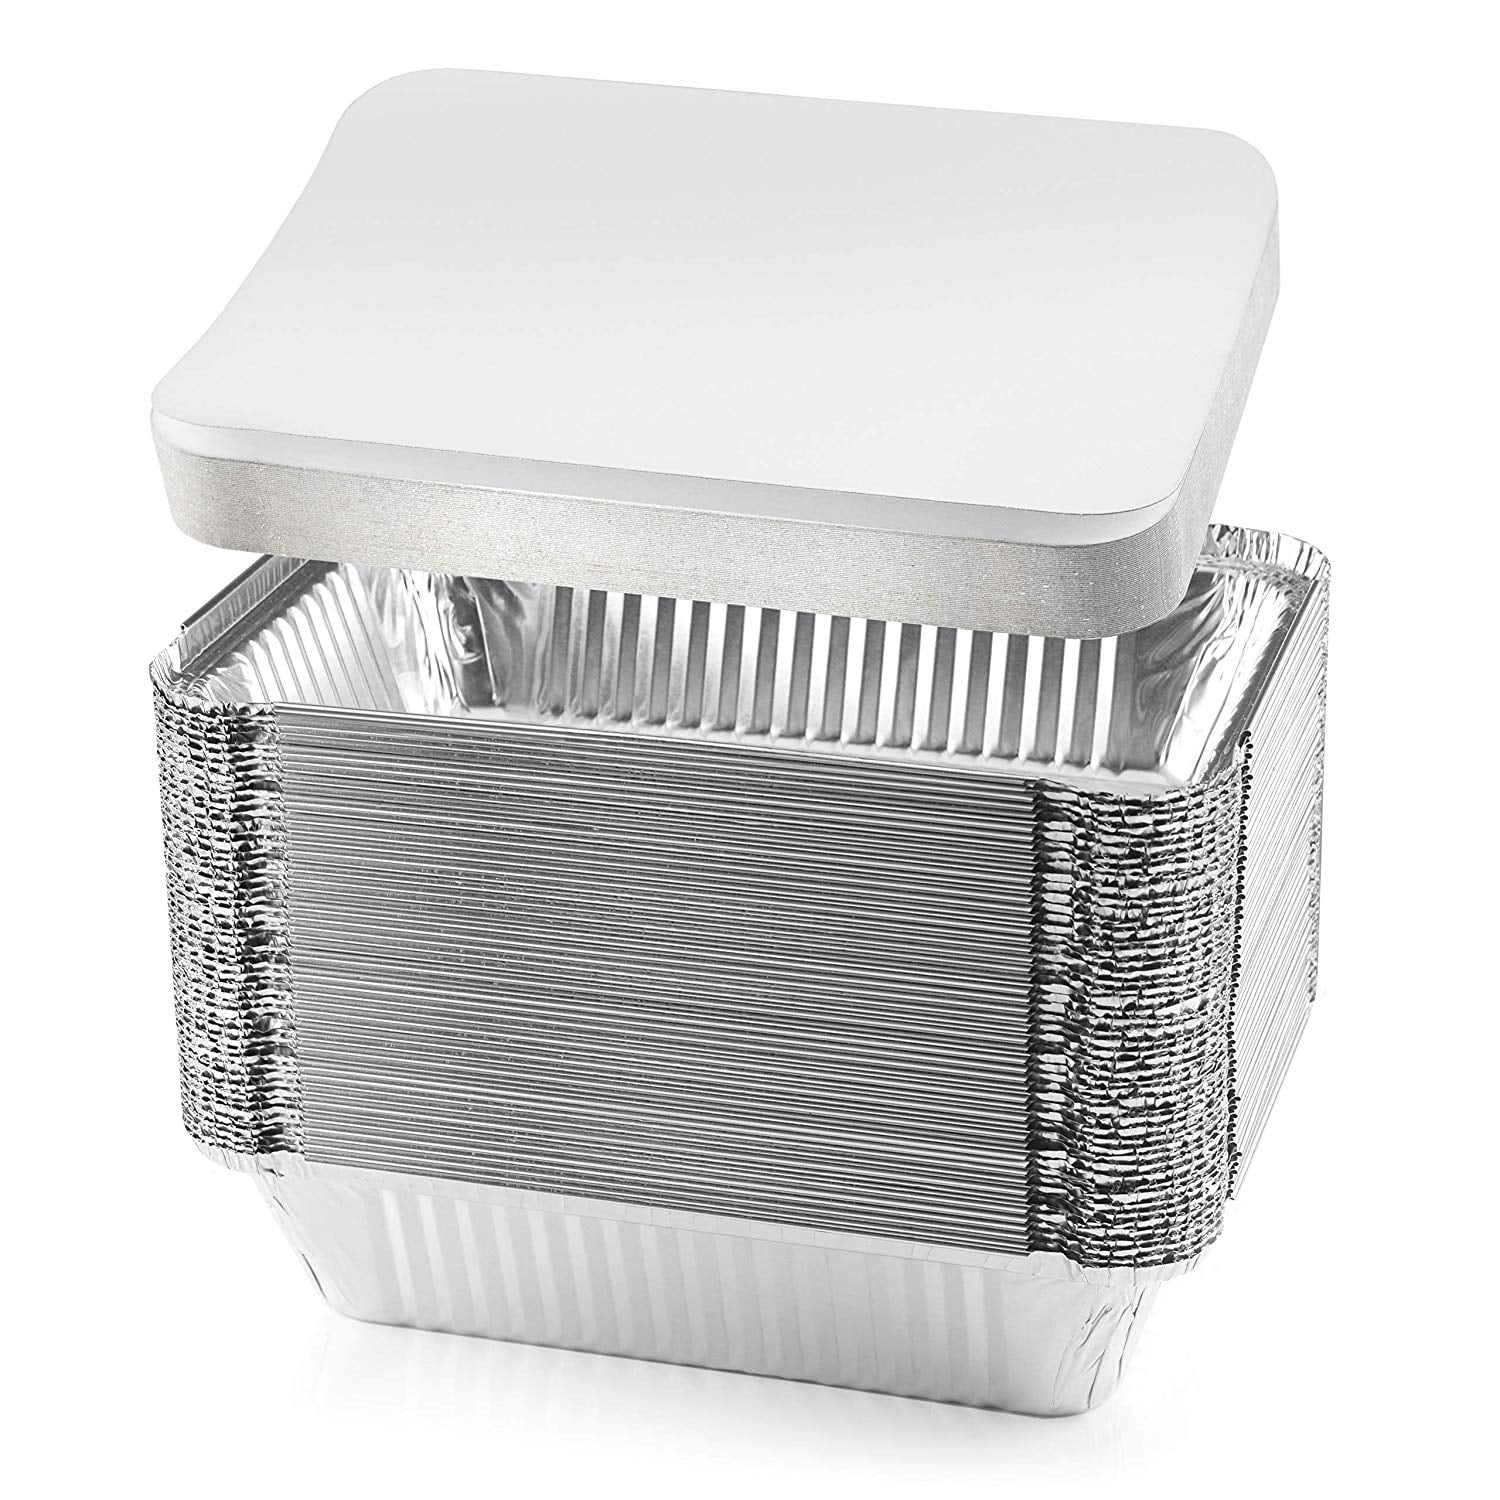 55 Pack - Aluminum Pan / Containers with Lids / Foil Containers / Aluminum  Pans with Lids / Take Out Containers / Disposable Pans / Aluminum Foil Food